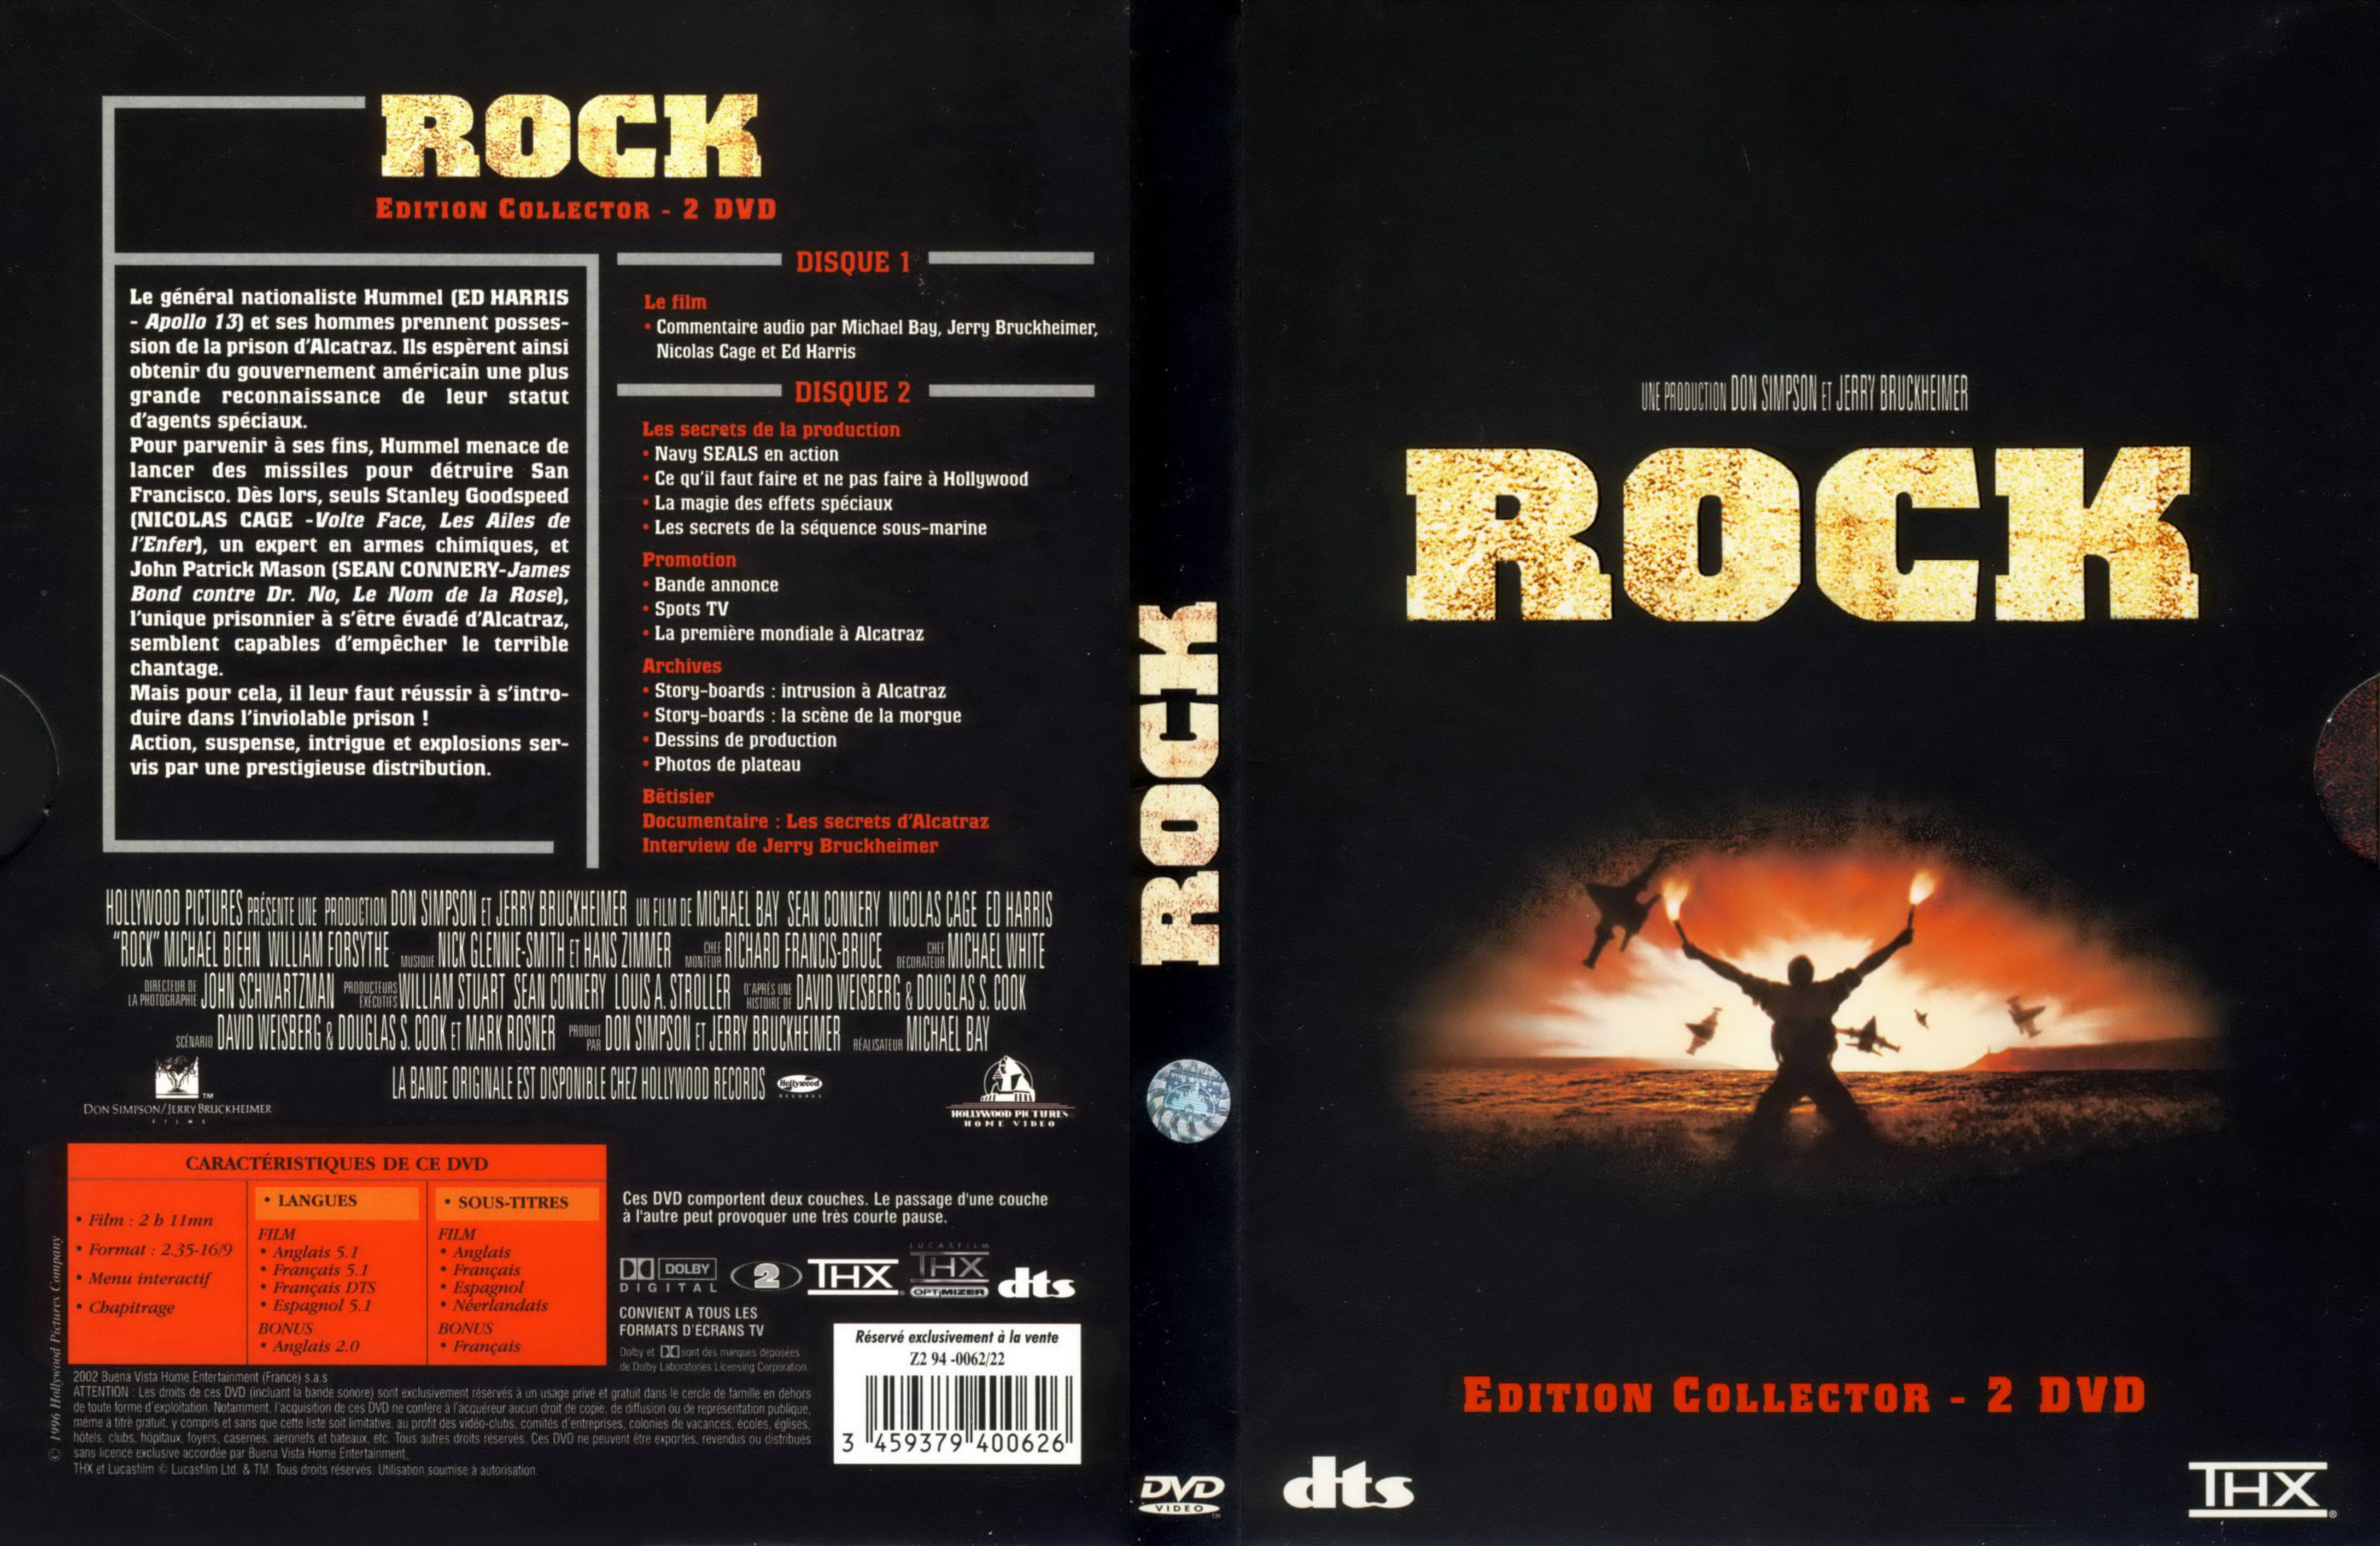 Jaquette DVD Rock v3